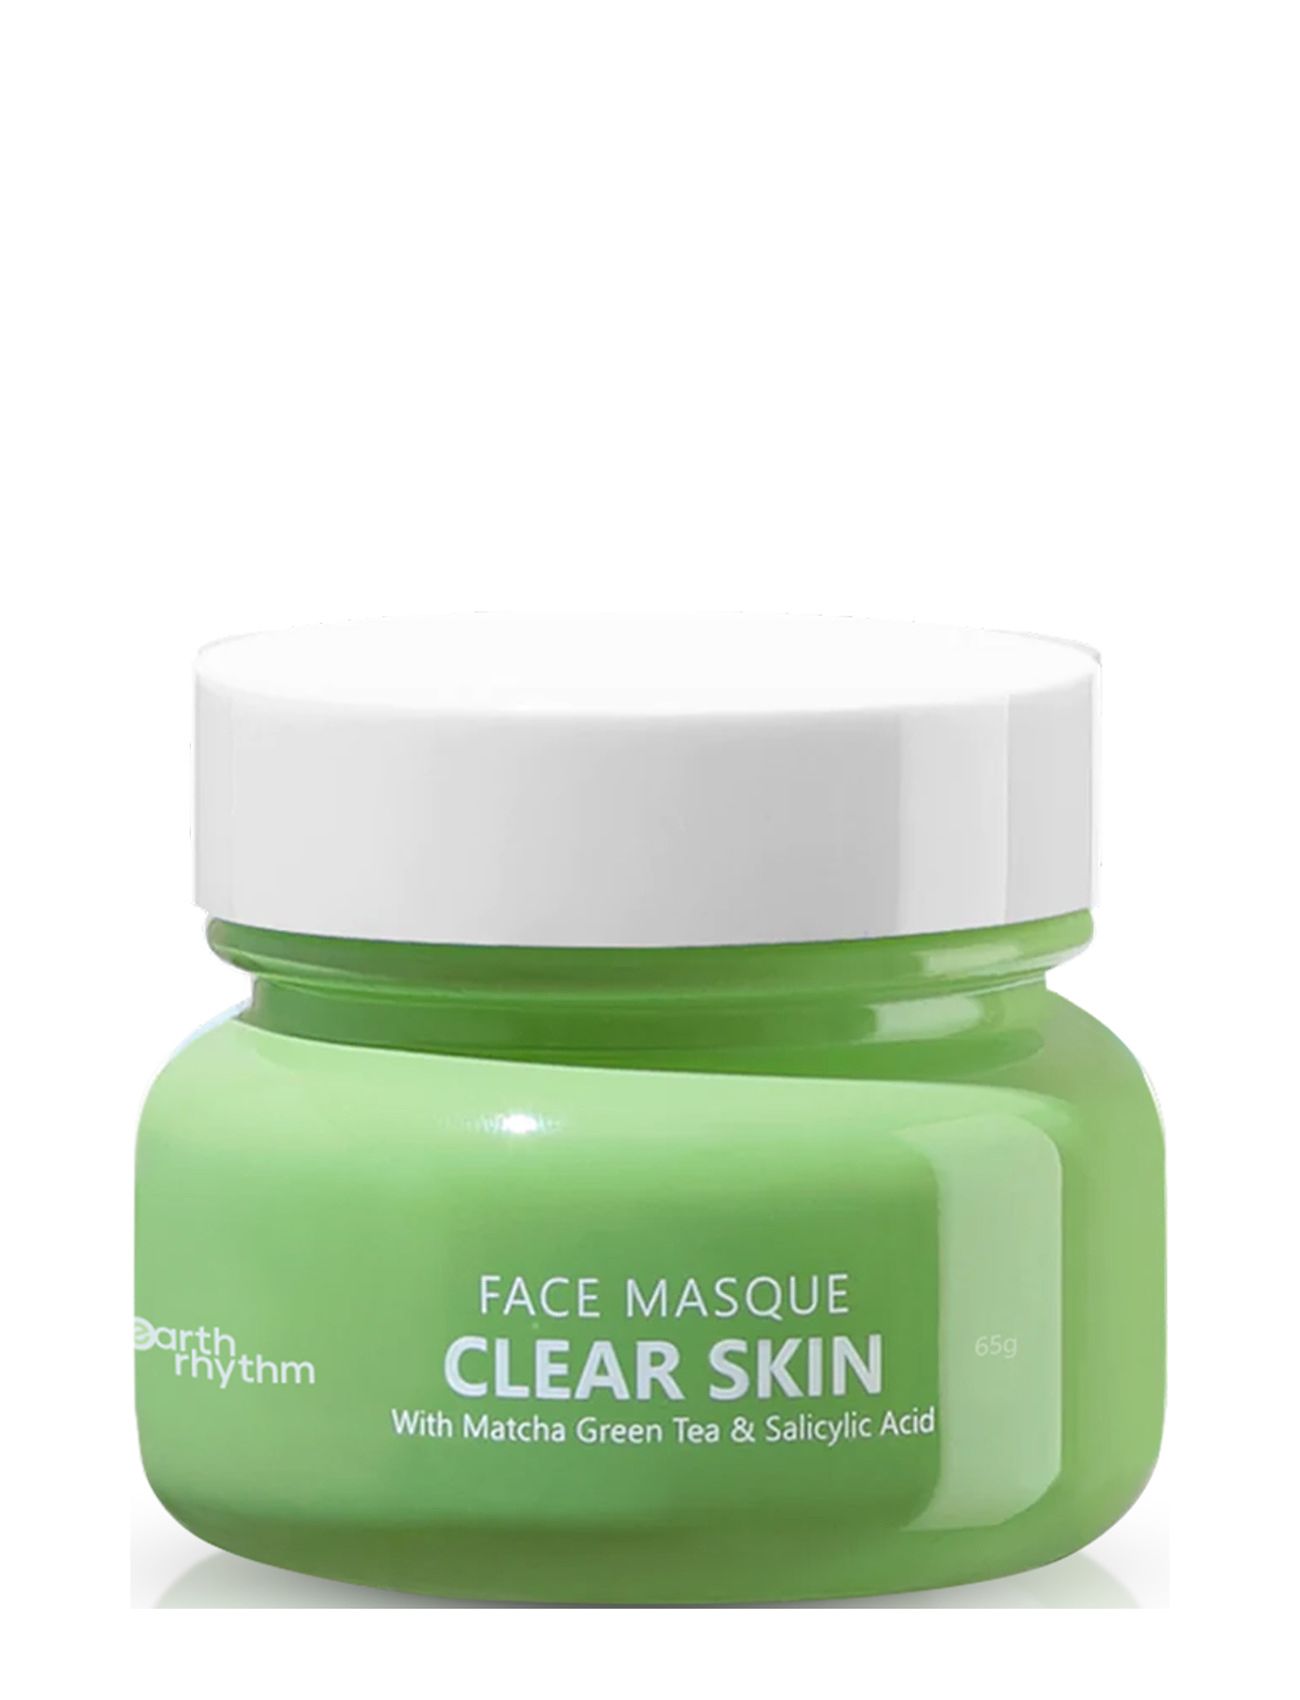 Clear Skin Face Masque With Matcha Green Tea & 2% Salicylic Acid Beauty Women Skin Care Face Face Masks Detox Mask Green Earth Rhythm